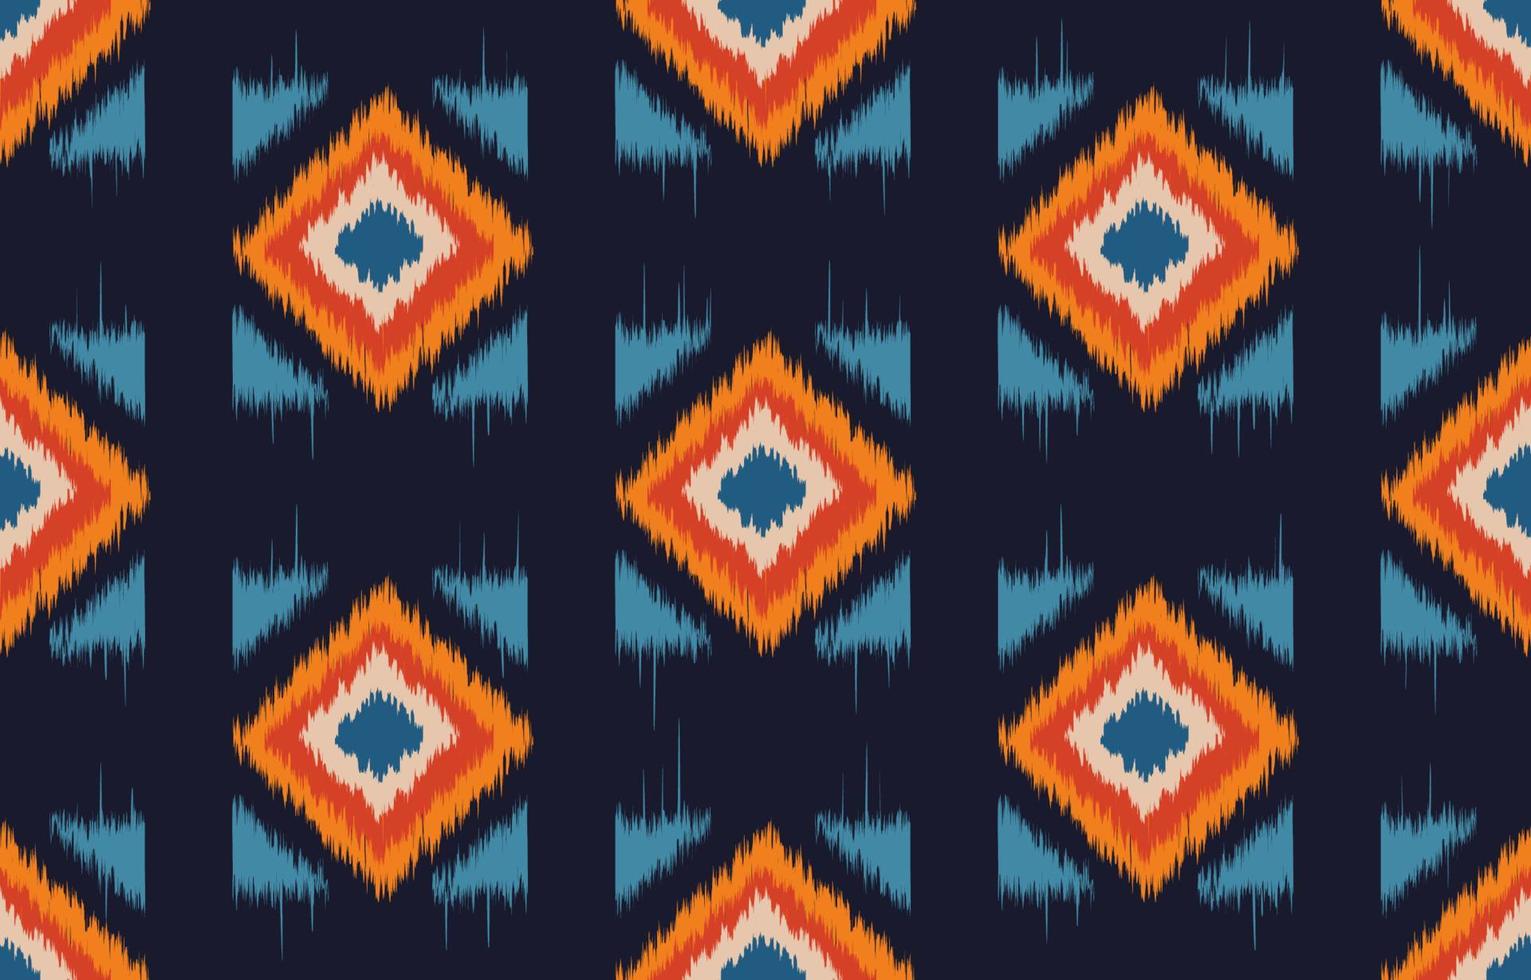 patrón de tela, patrón geométrico étnico oriental sin costuras diseño tradicional para fondo, alfombra, papel pintado.ropa,envoltura,tela batik,vector illustration.ikat tribal indian.fashion textil vector